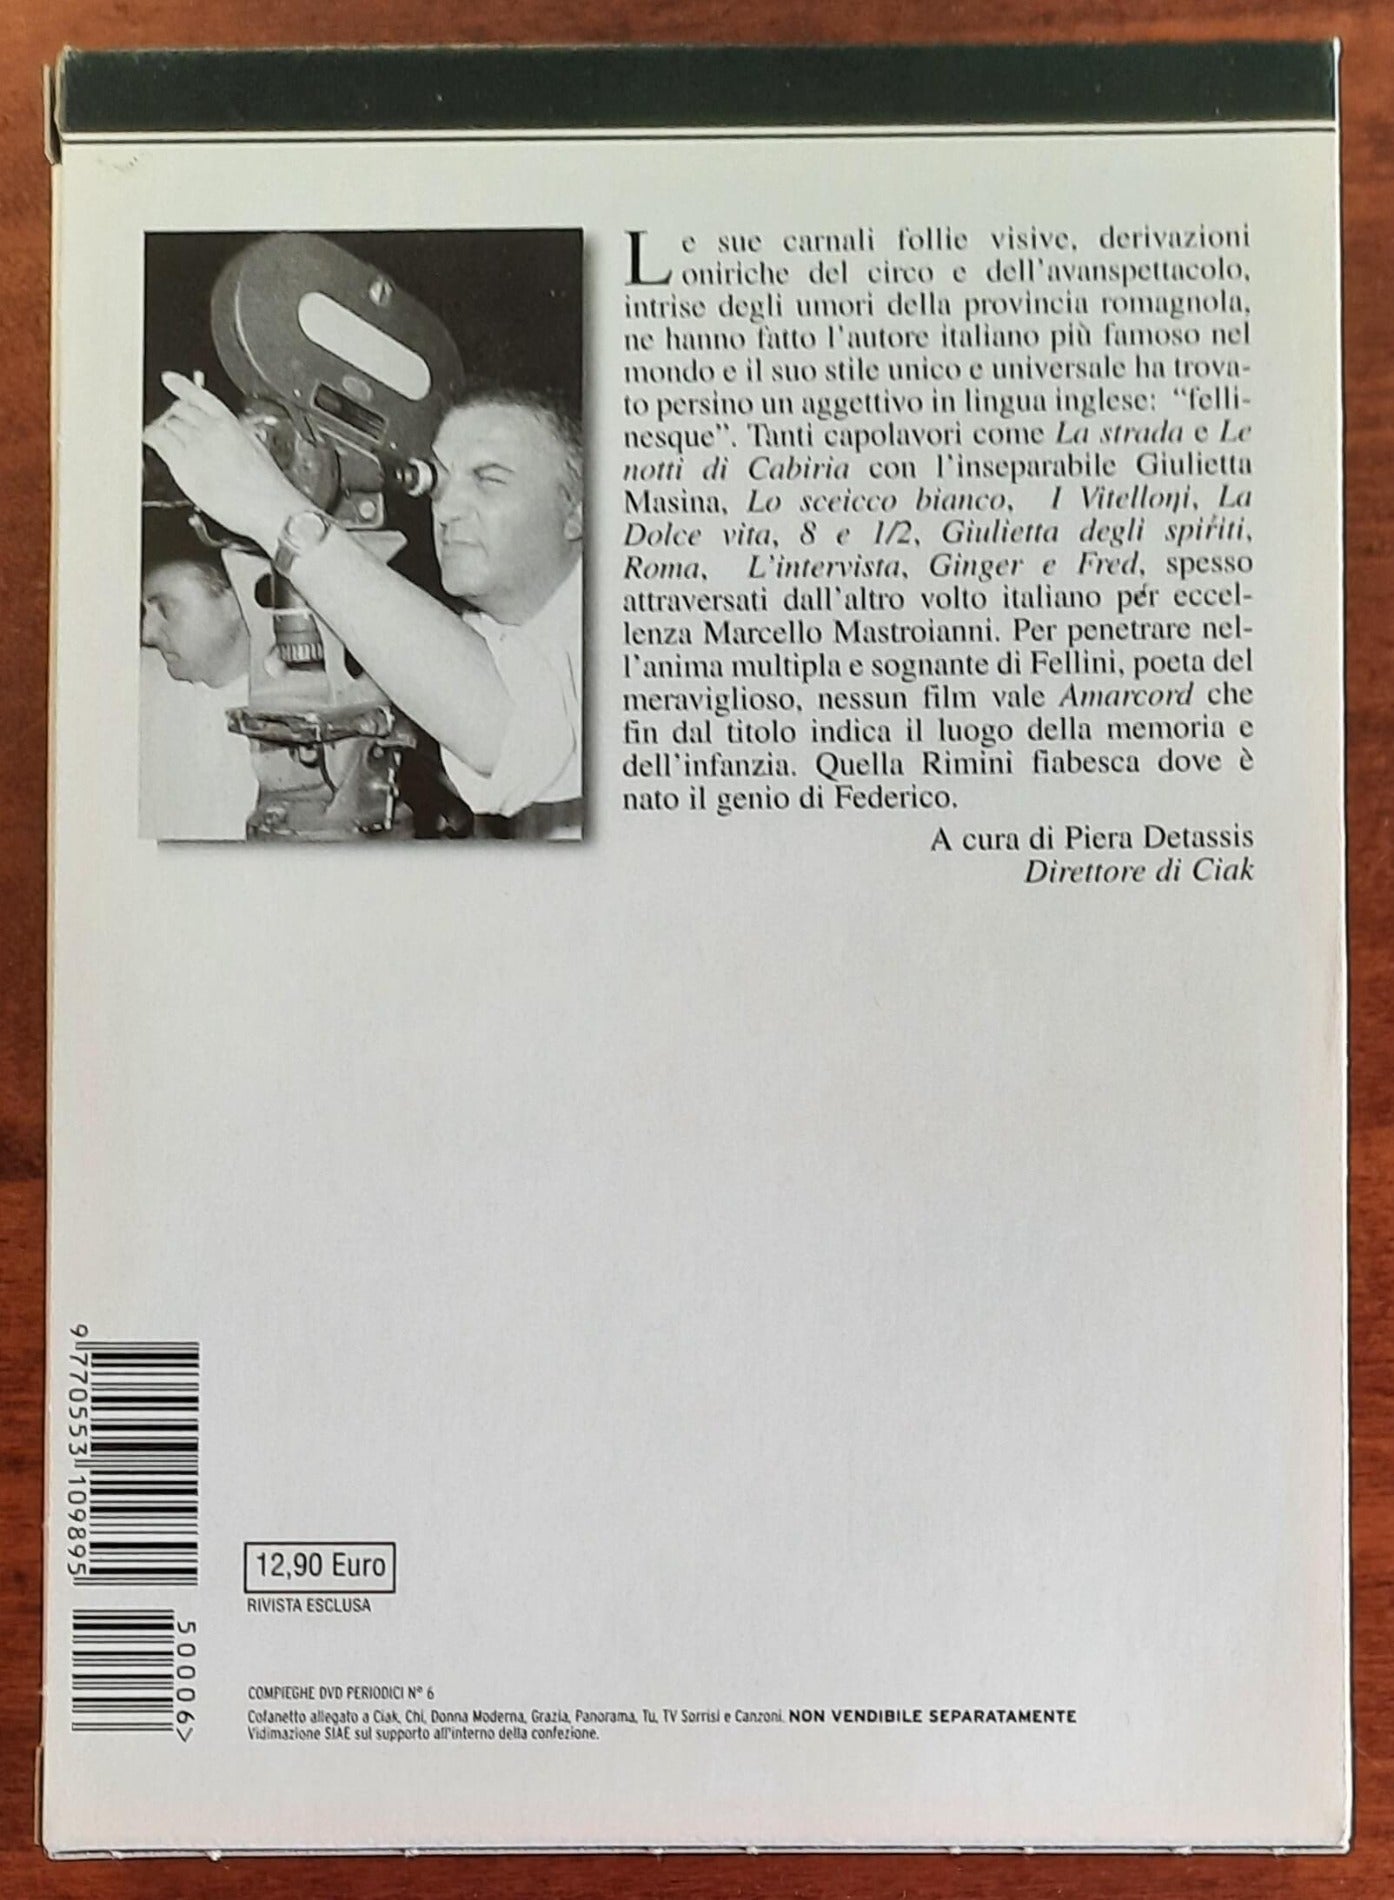 DVD + libro: Amarcord di Federico Fellini